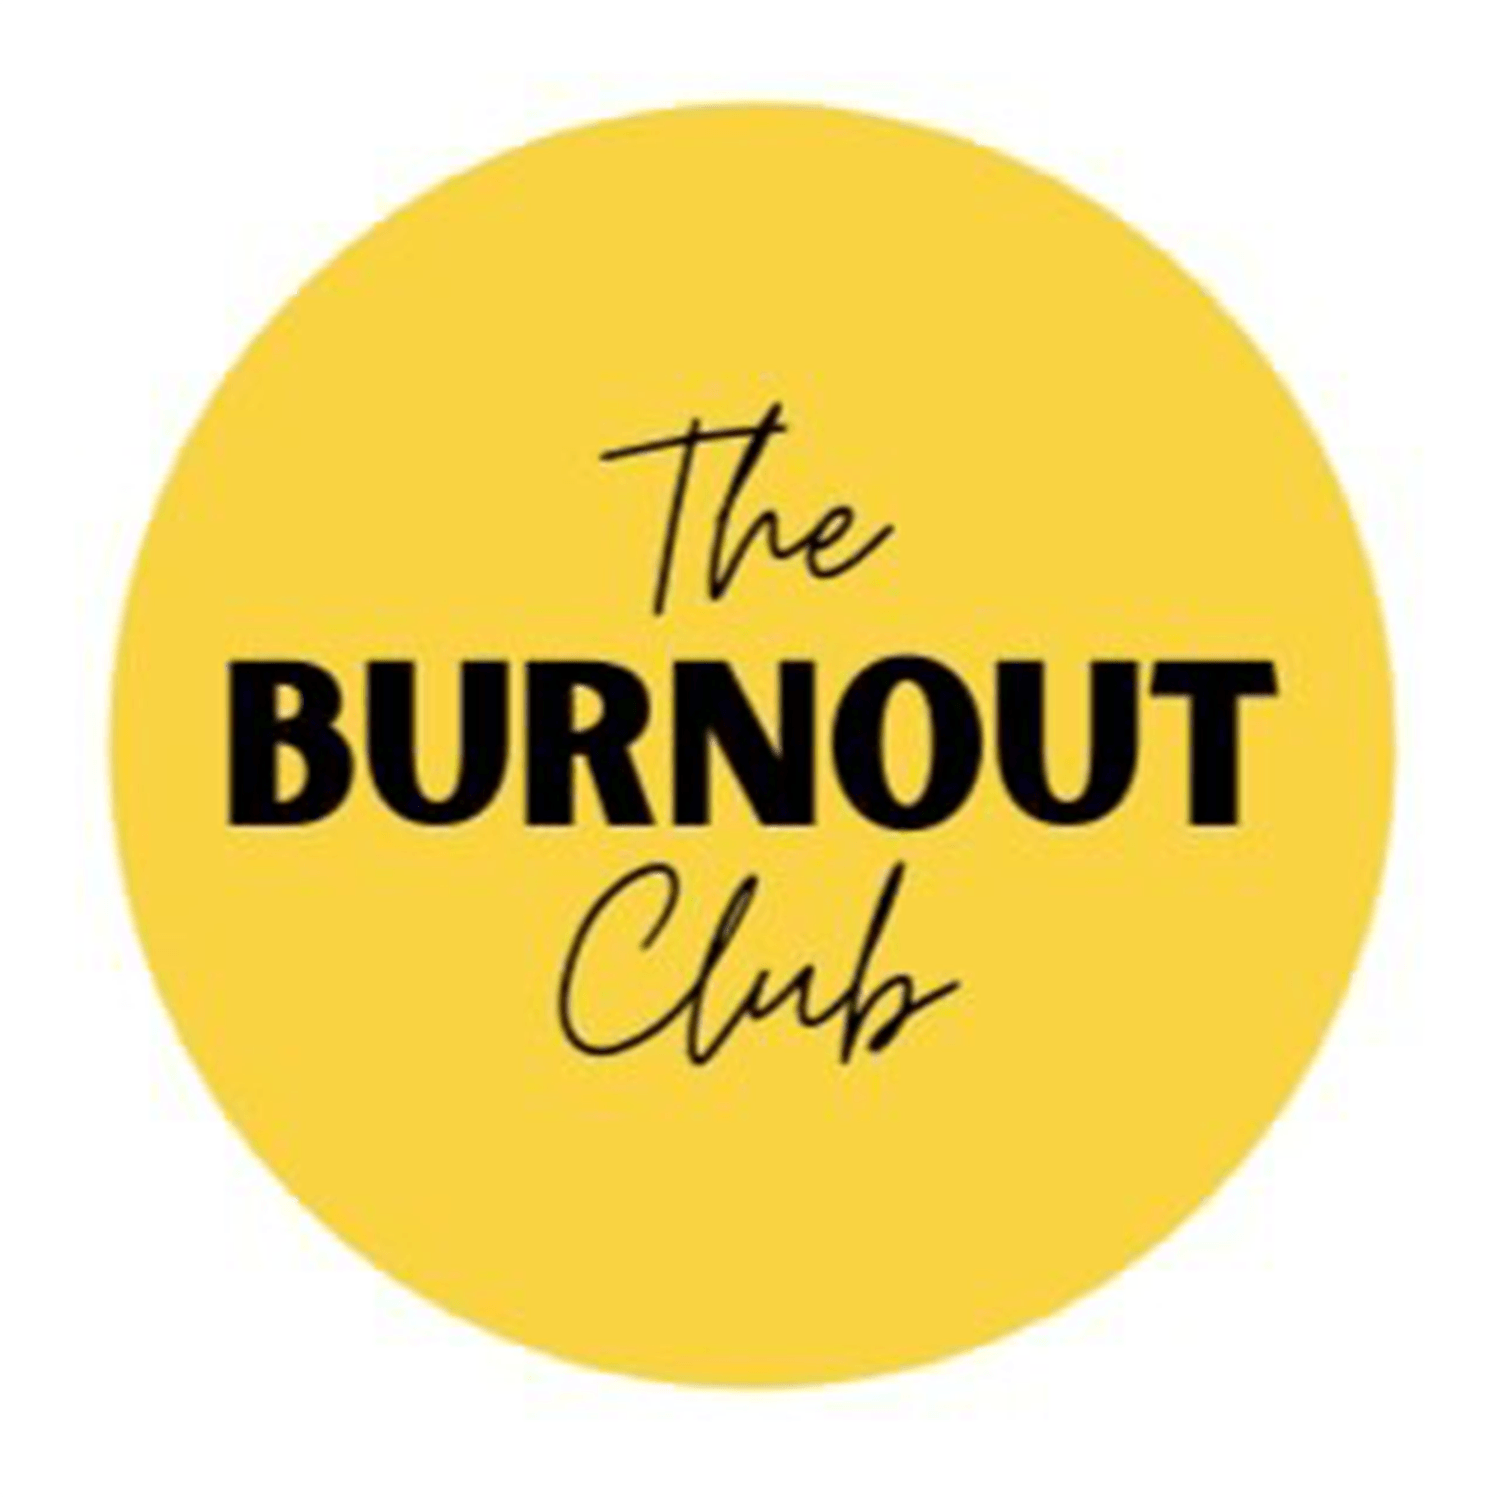 The Burnout Club